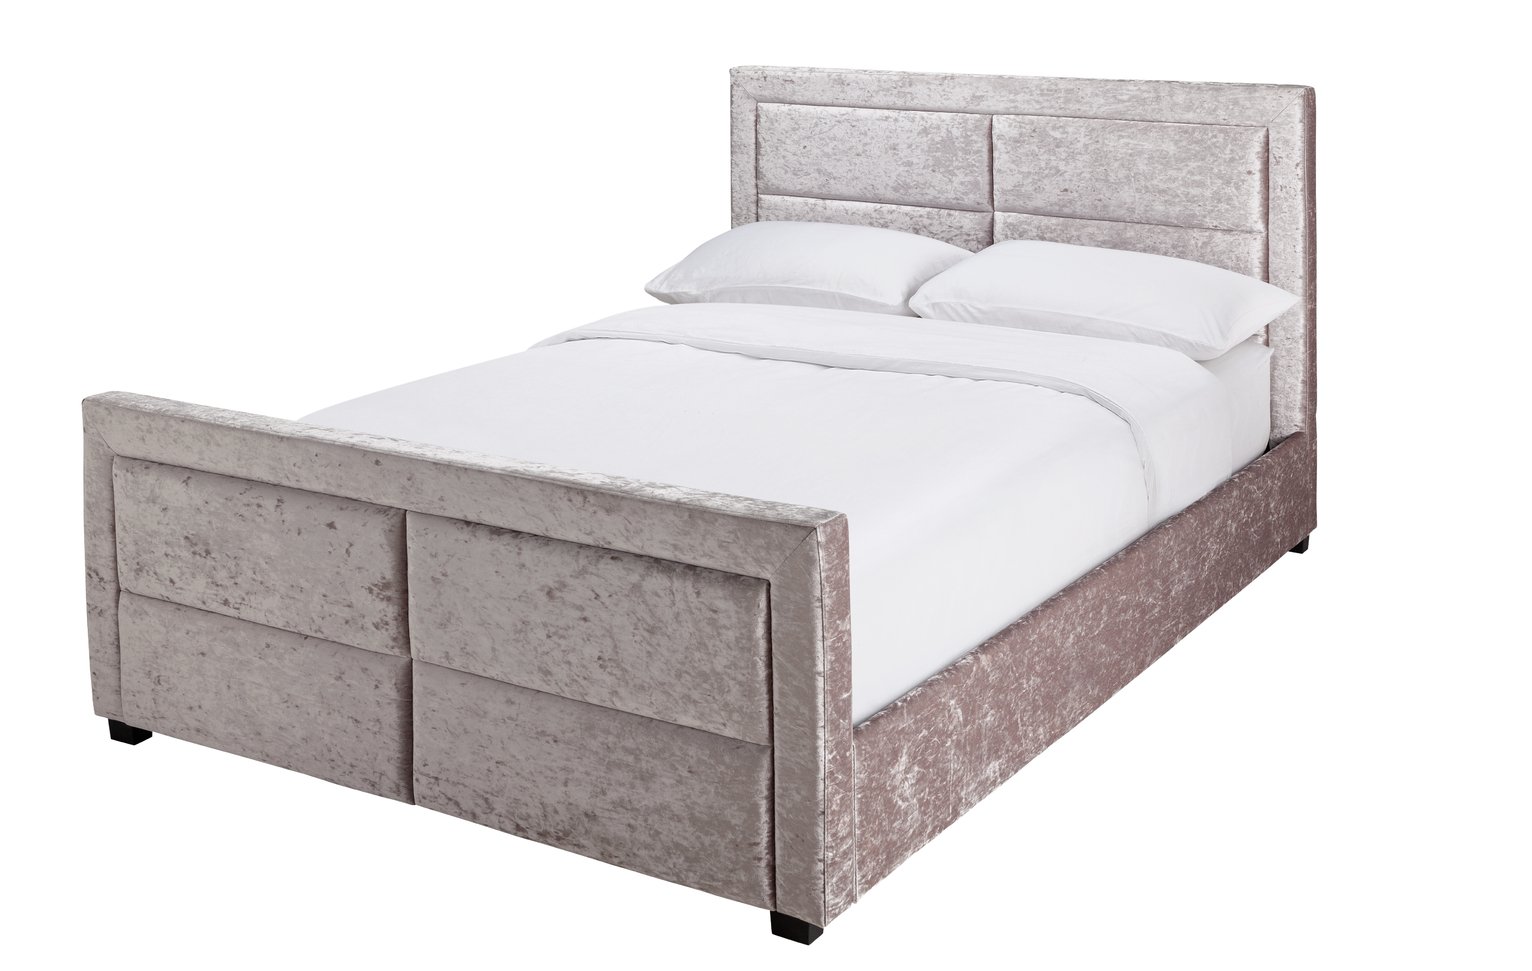 Argos Home Kourtney Crushed Velvet Double Bed Frame - Silver